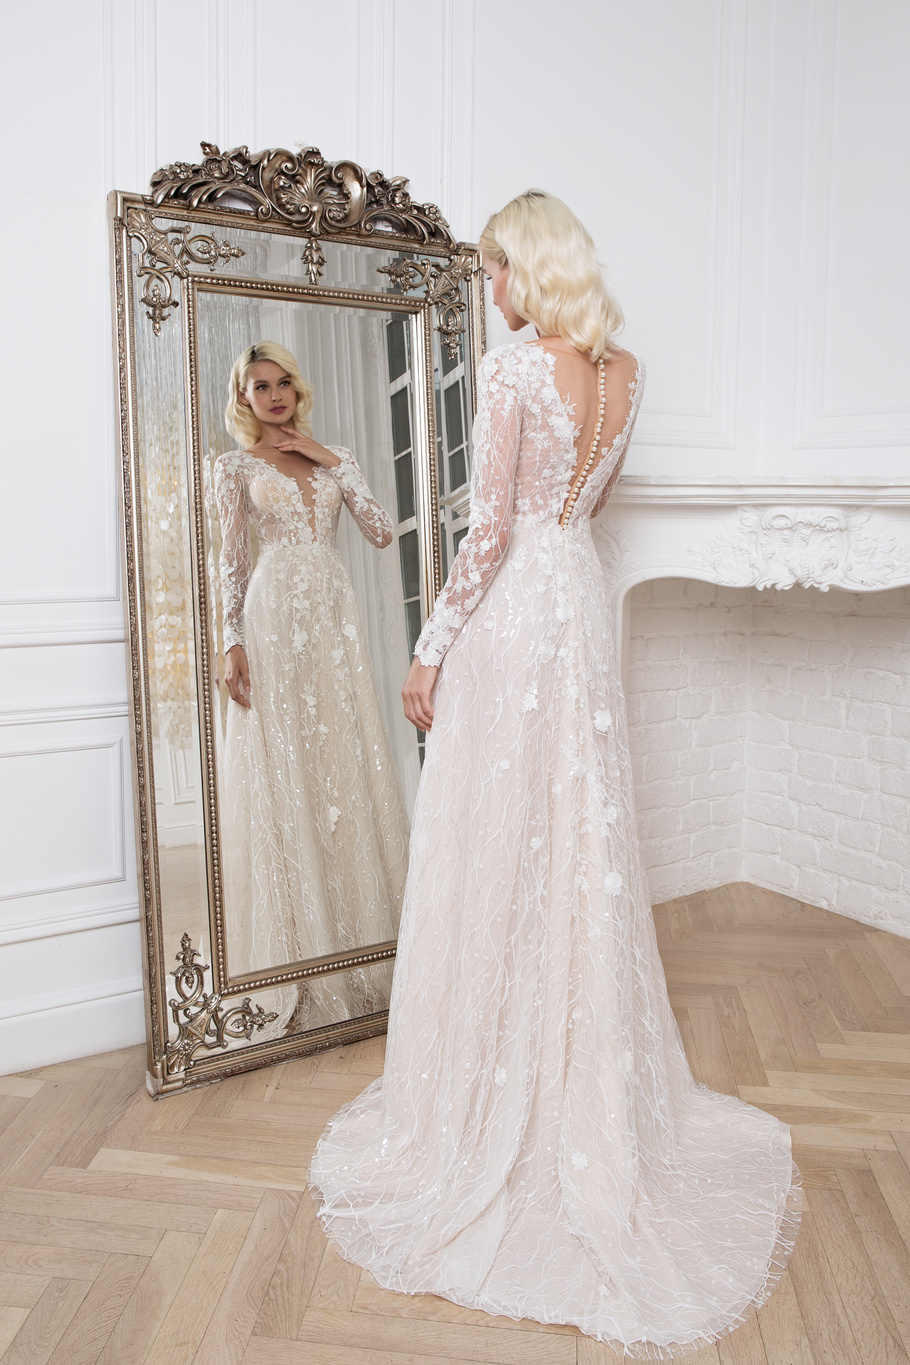 Купить свадебное платье «Альмерия» Мэрри Марк из коллекции 2020 года в Нижнем Новгороде